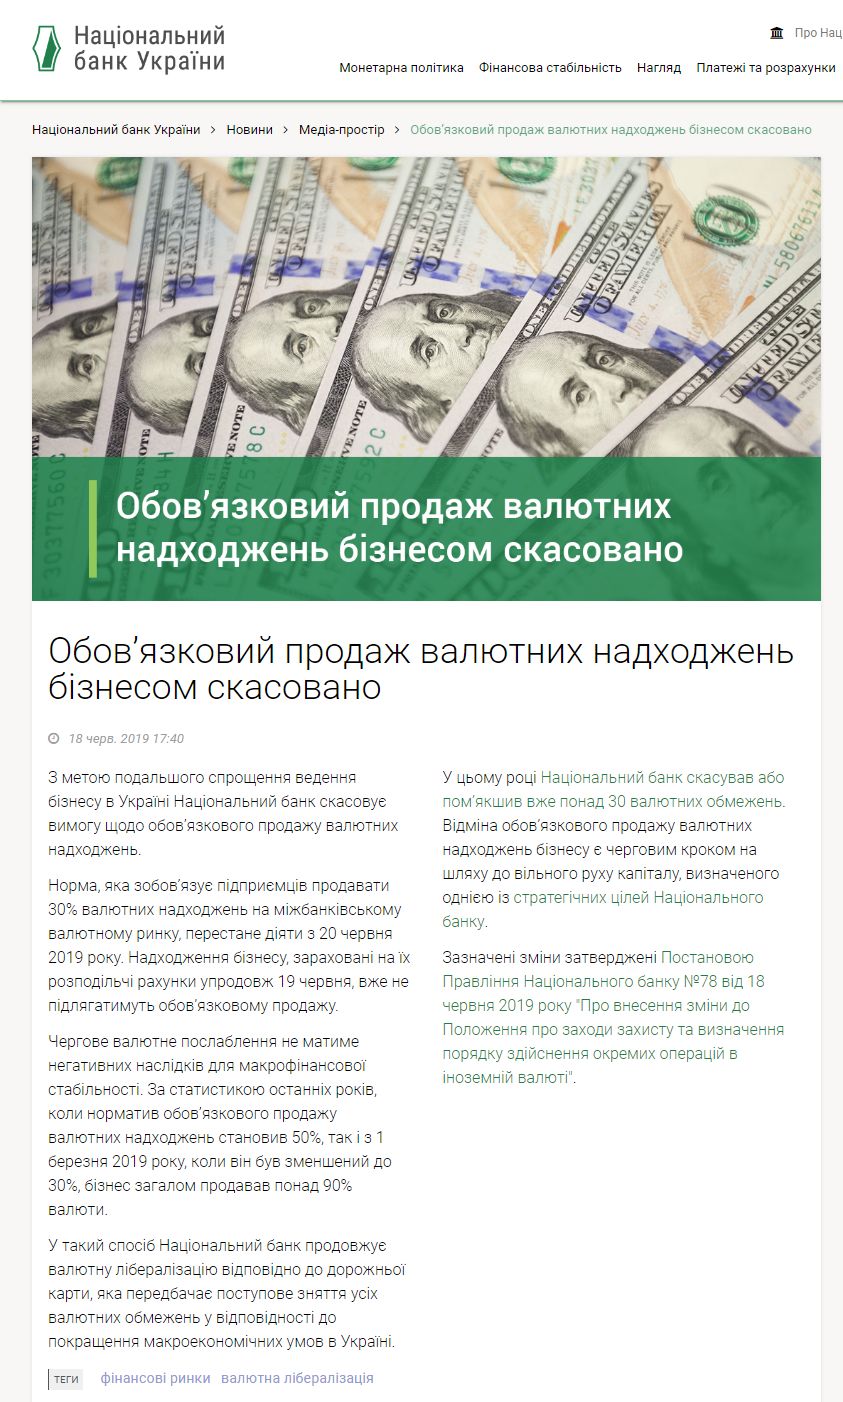 https://bank.gov.ua/ua/news/all/obovyazkoviy-prodaj-valyutnih-nadhodjen-biznesom-skasovano